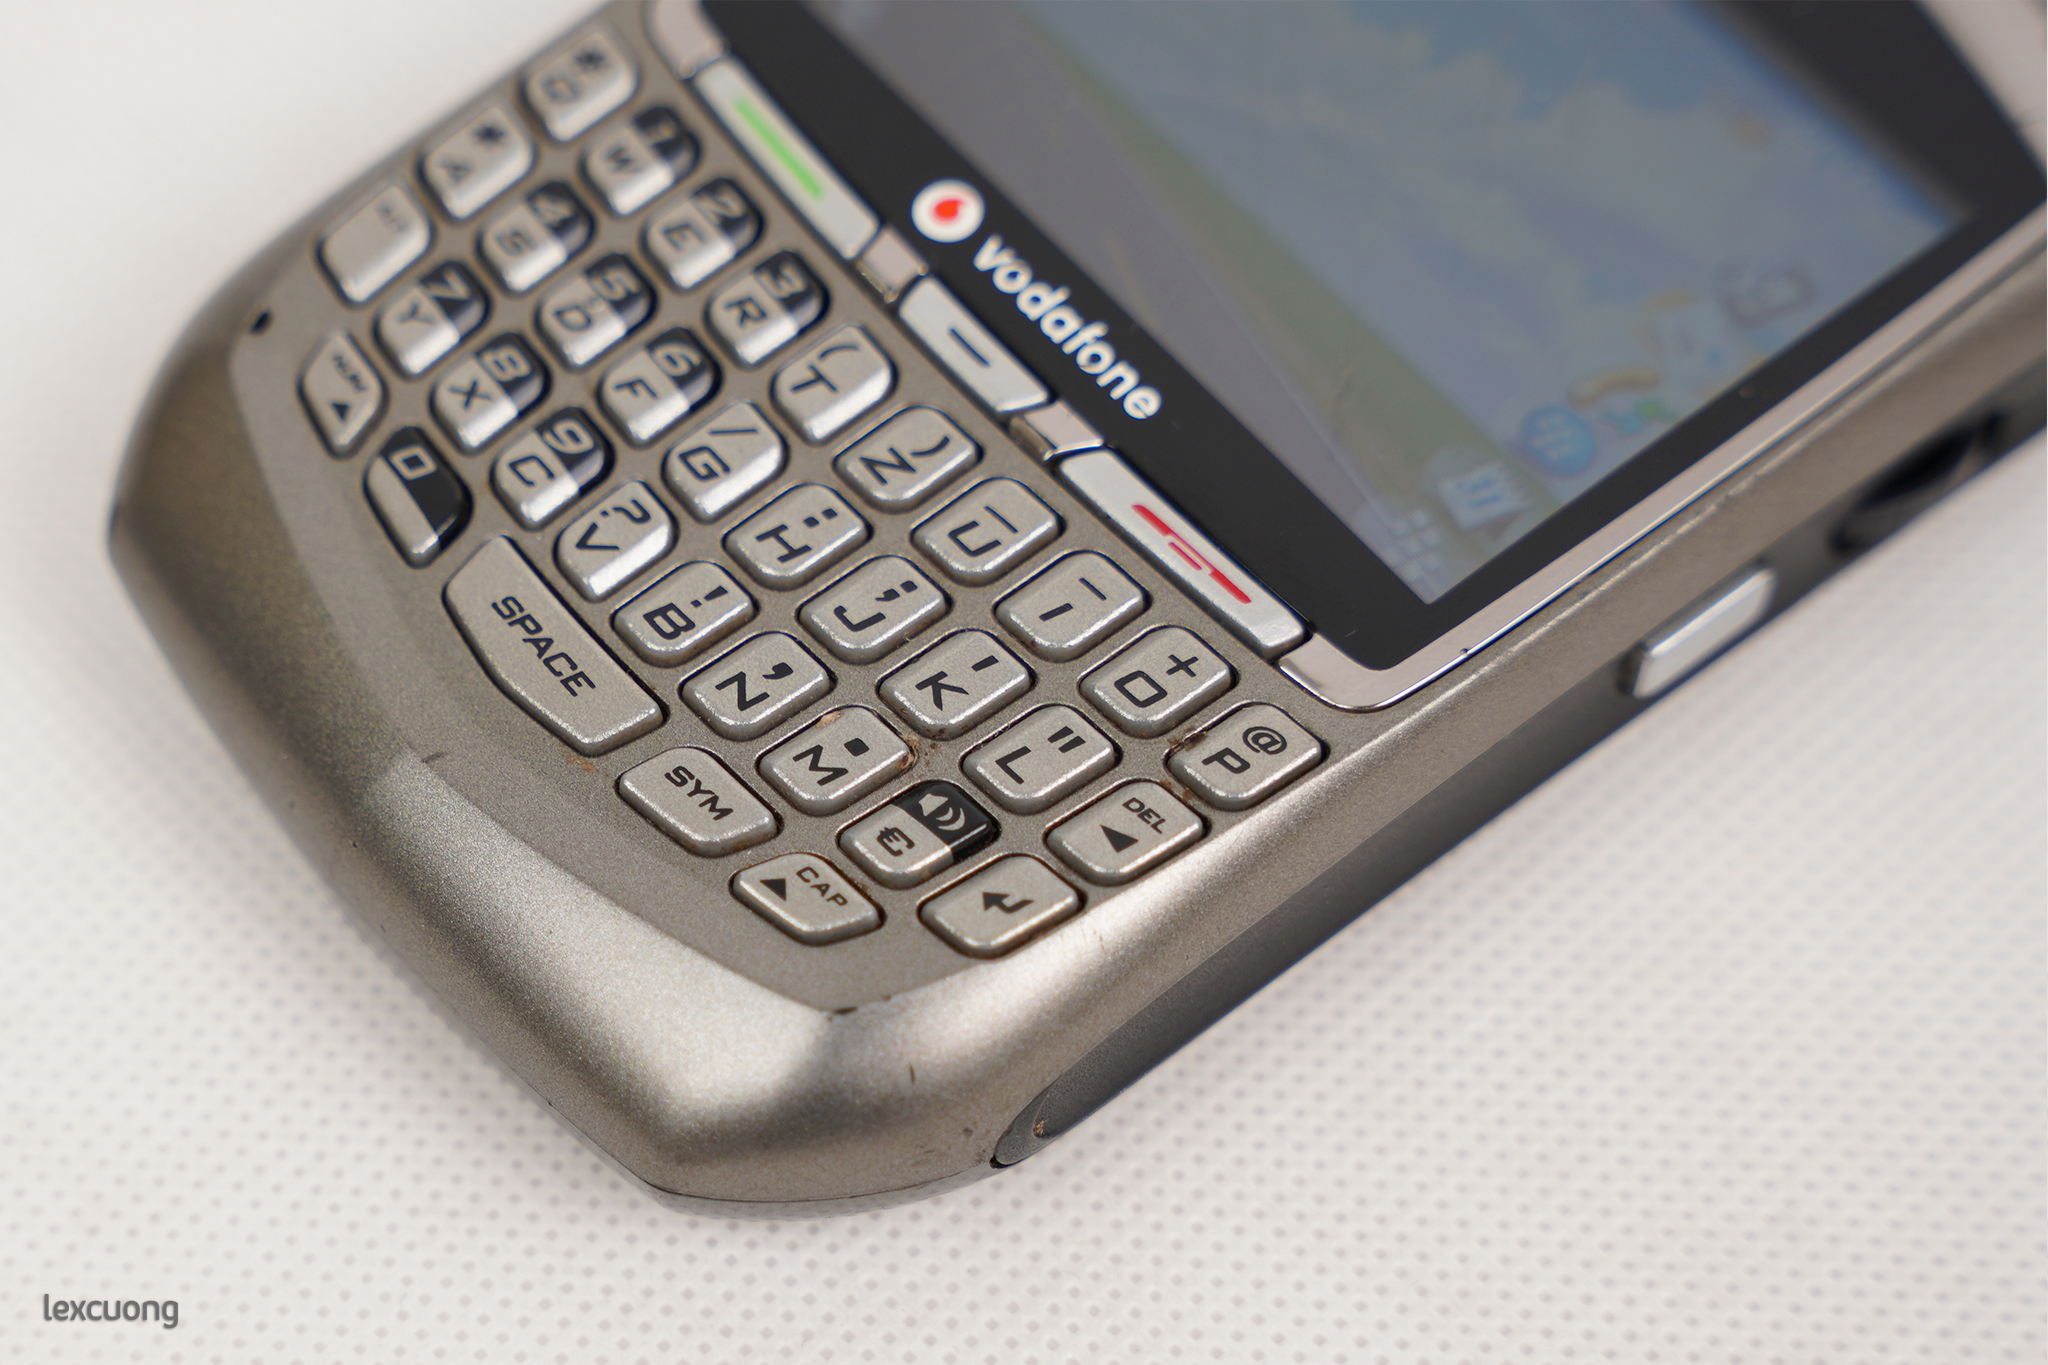 Blackberry 8700g (25).jpg